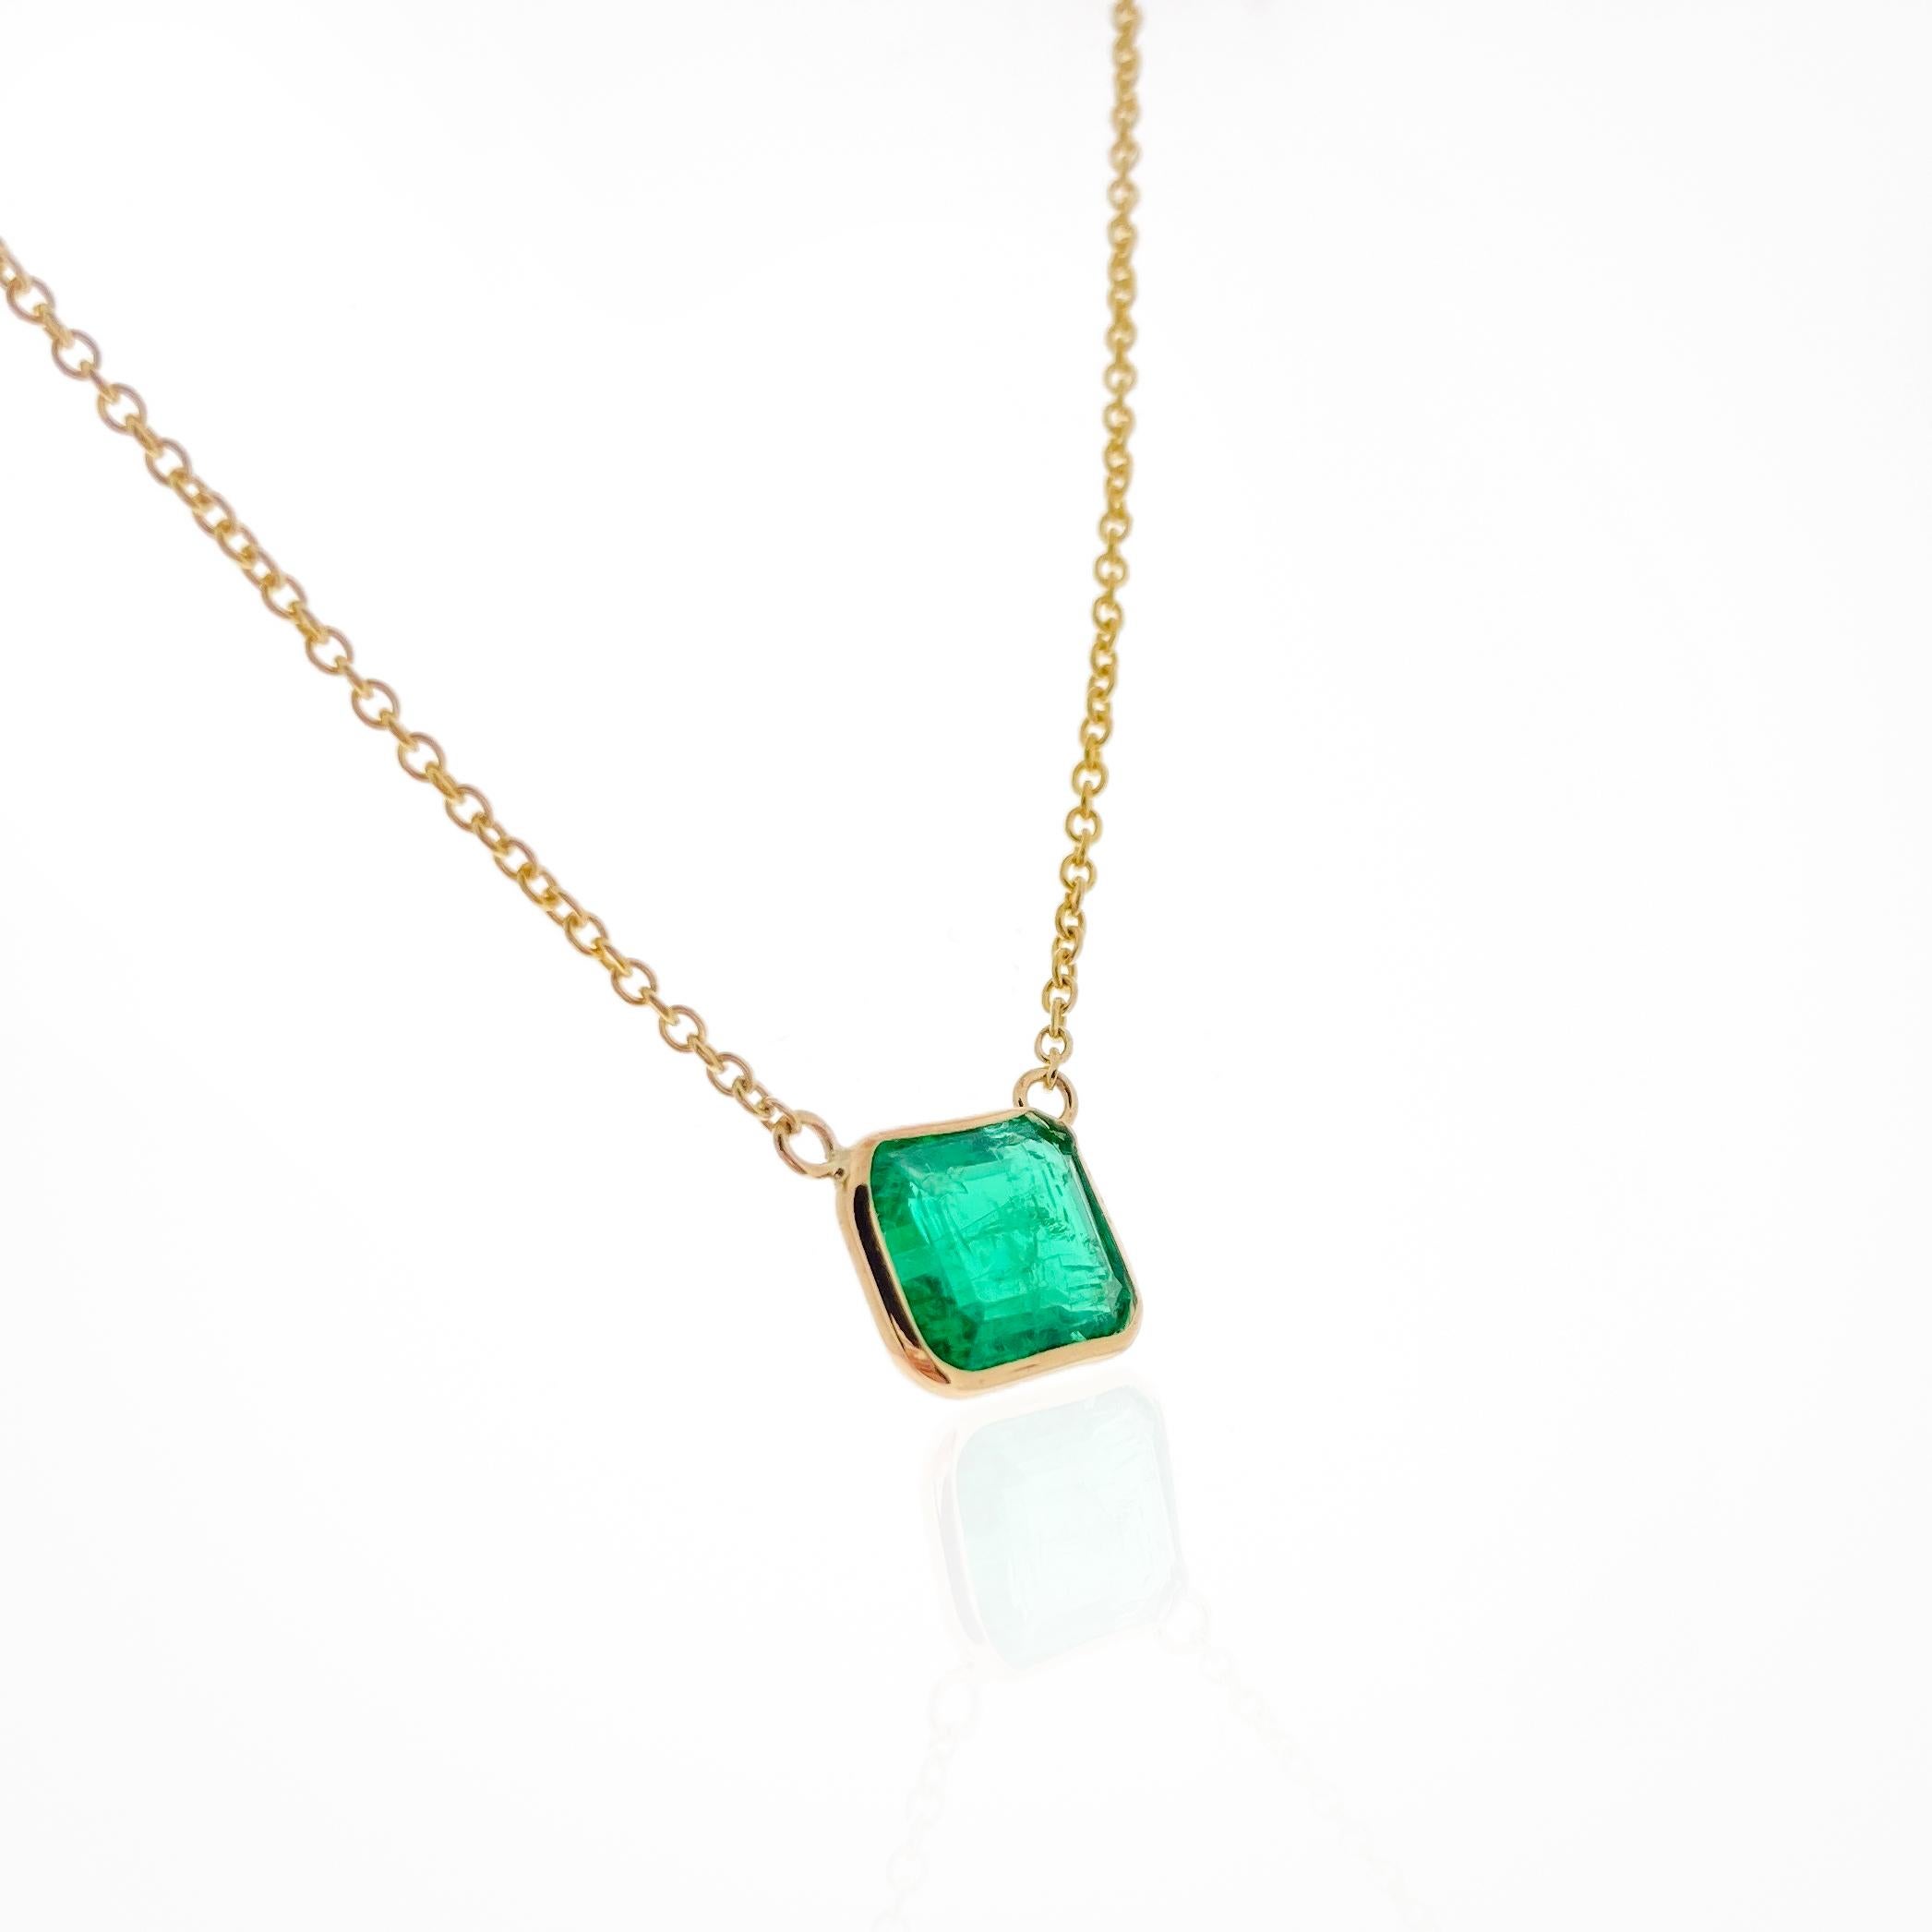 Ce collier présente une émeraude verte taillée en émeraude d'un poids de 1,76 carats, sertie dans de l'or jaune 14k (YG). Les émeraudes sont connues pour leur couleur verte étonnante, et la taille émeraude accentue la beauté naturelle de la gemme